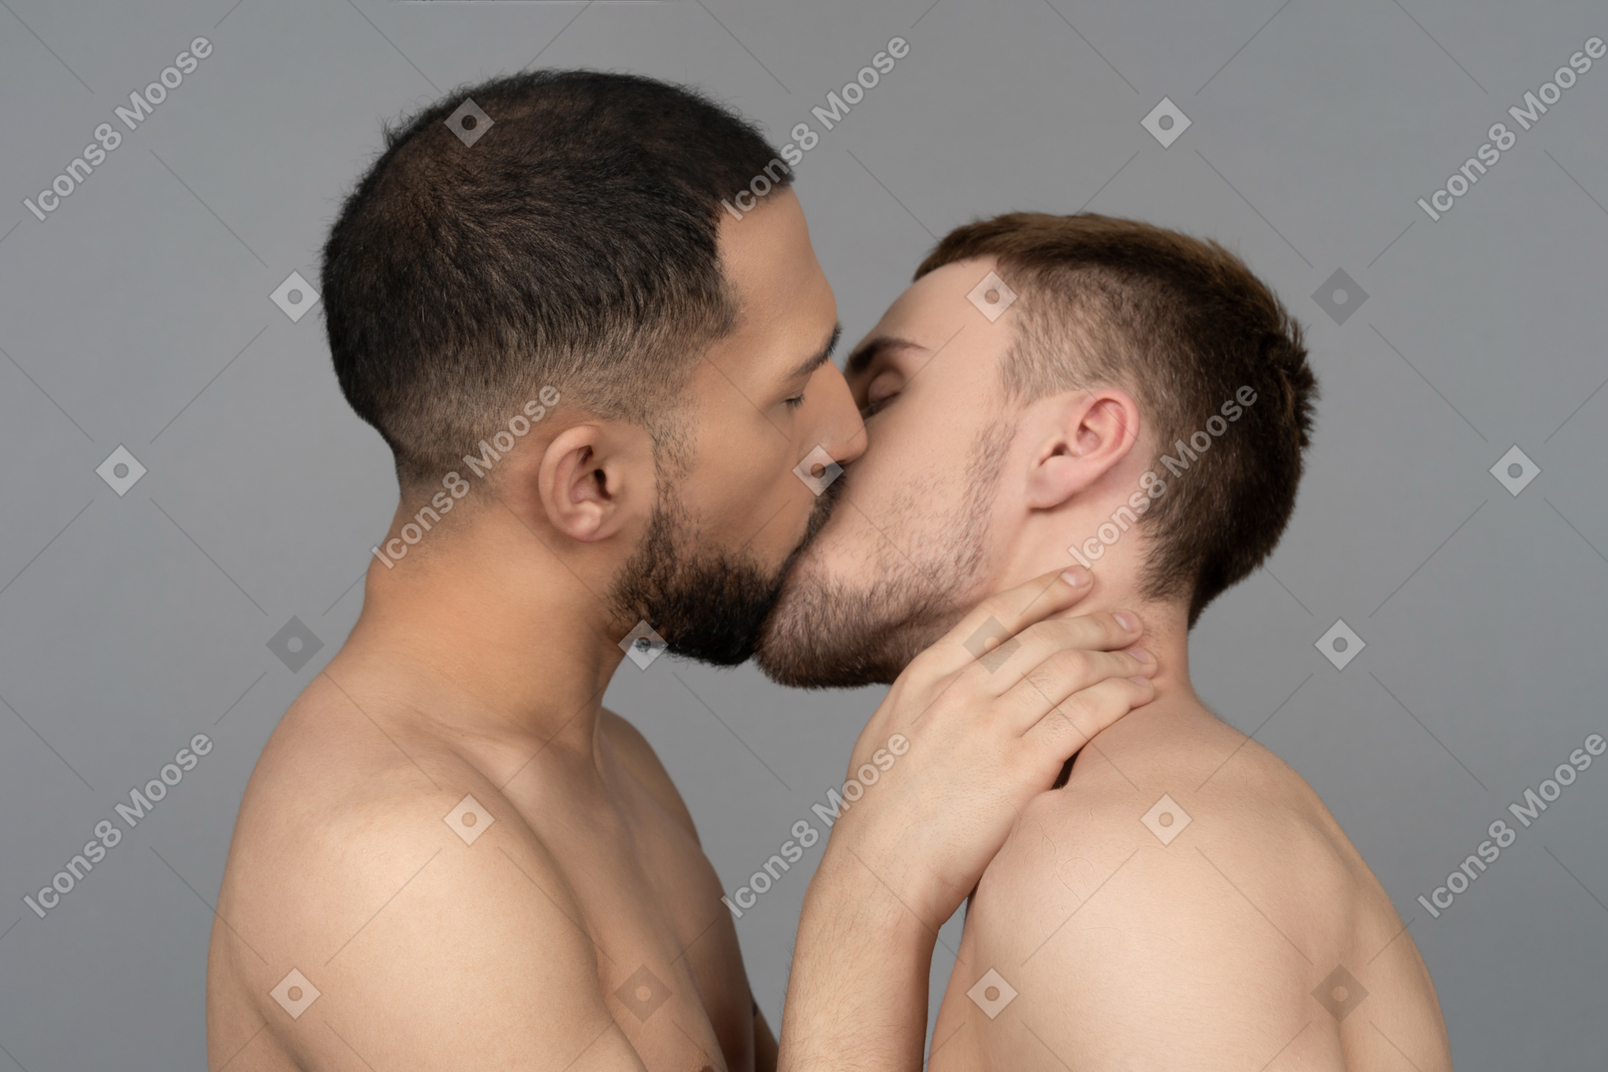 Nahaufnahme von zwei kaukasischen männern ohne hemd, die sich sanft küssen